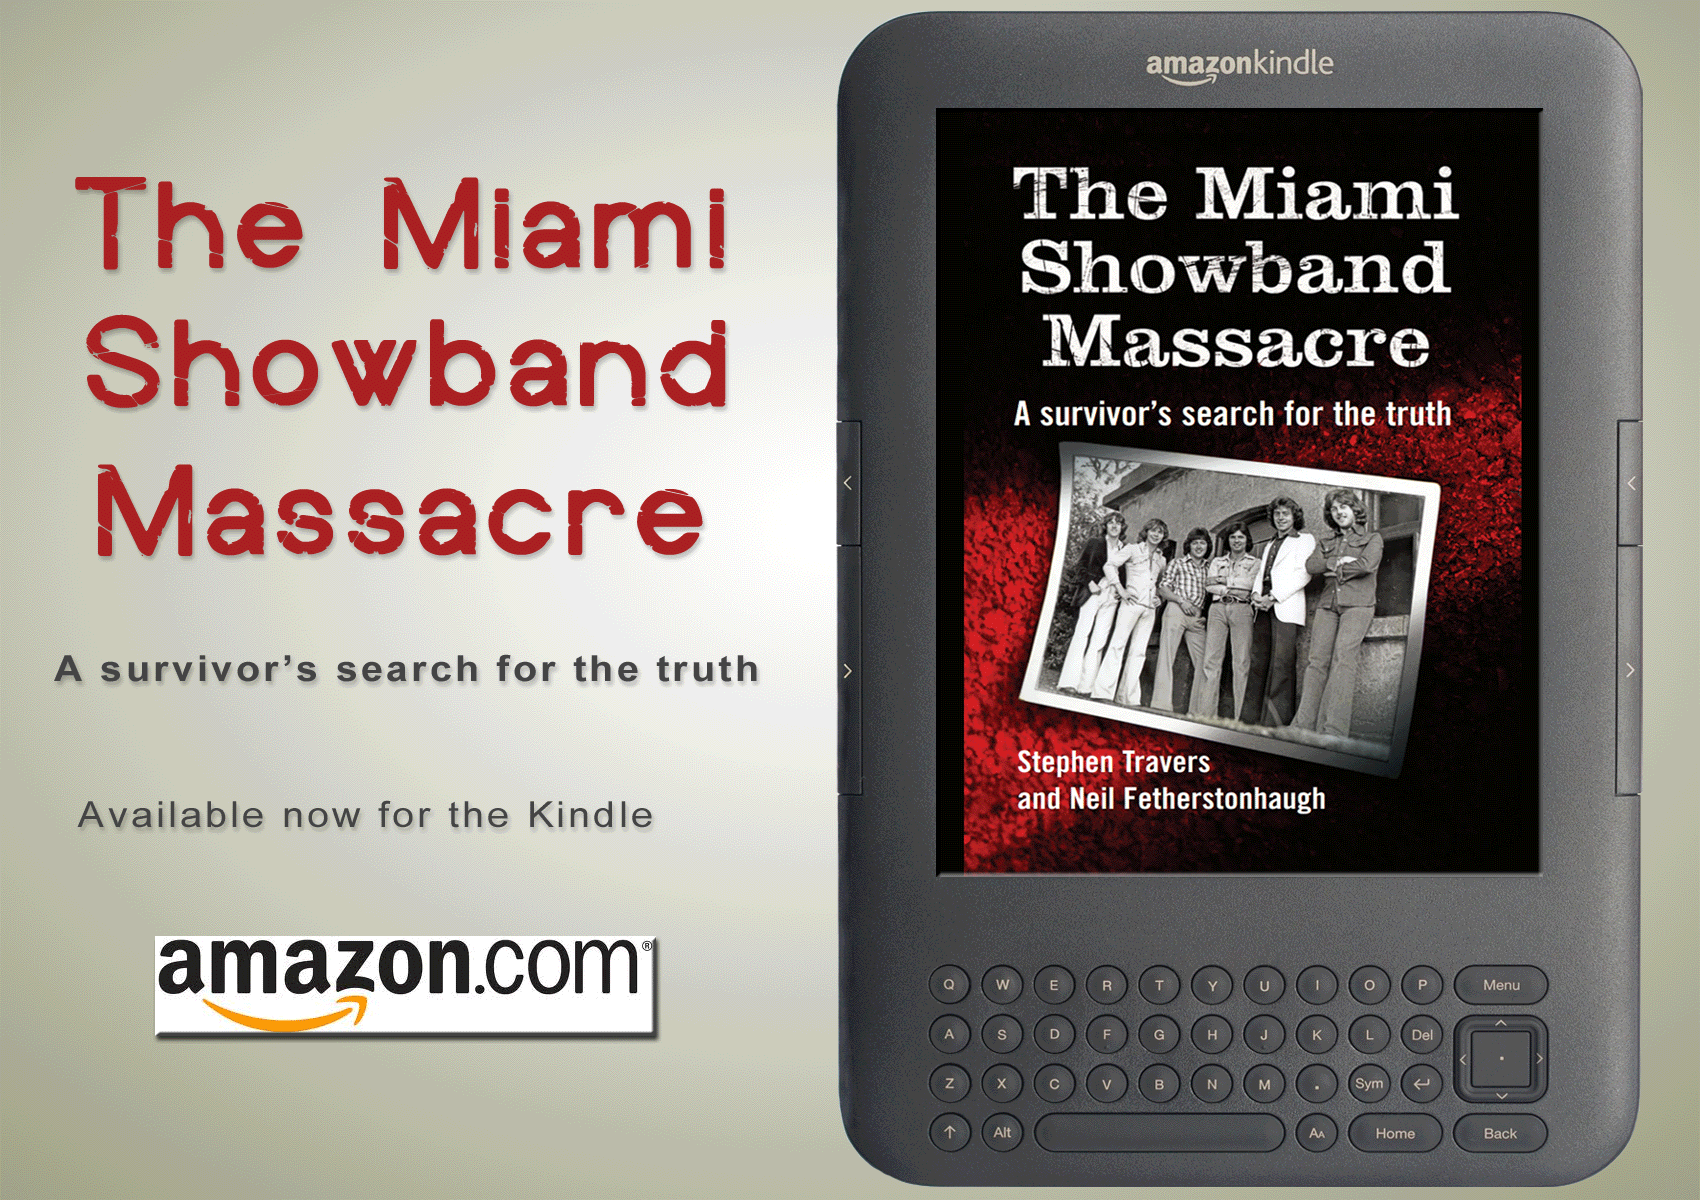 Miami Showband Massacre